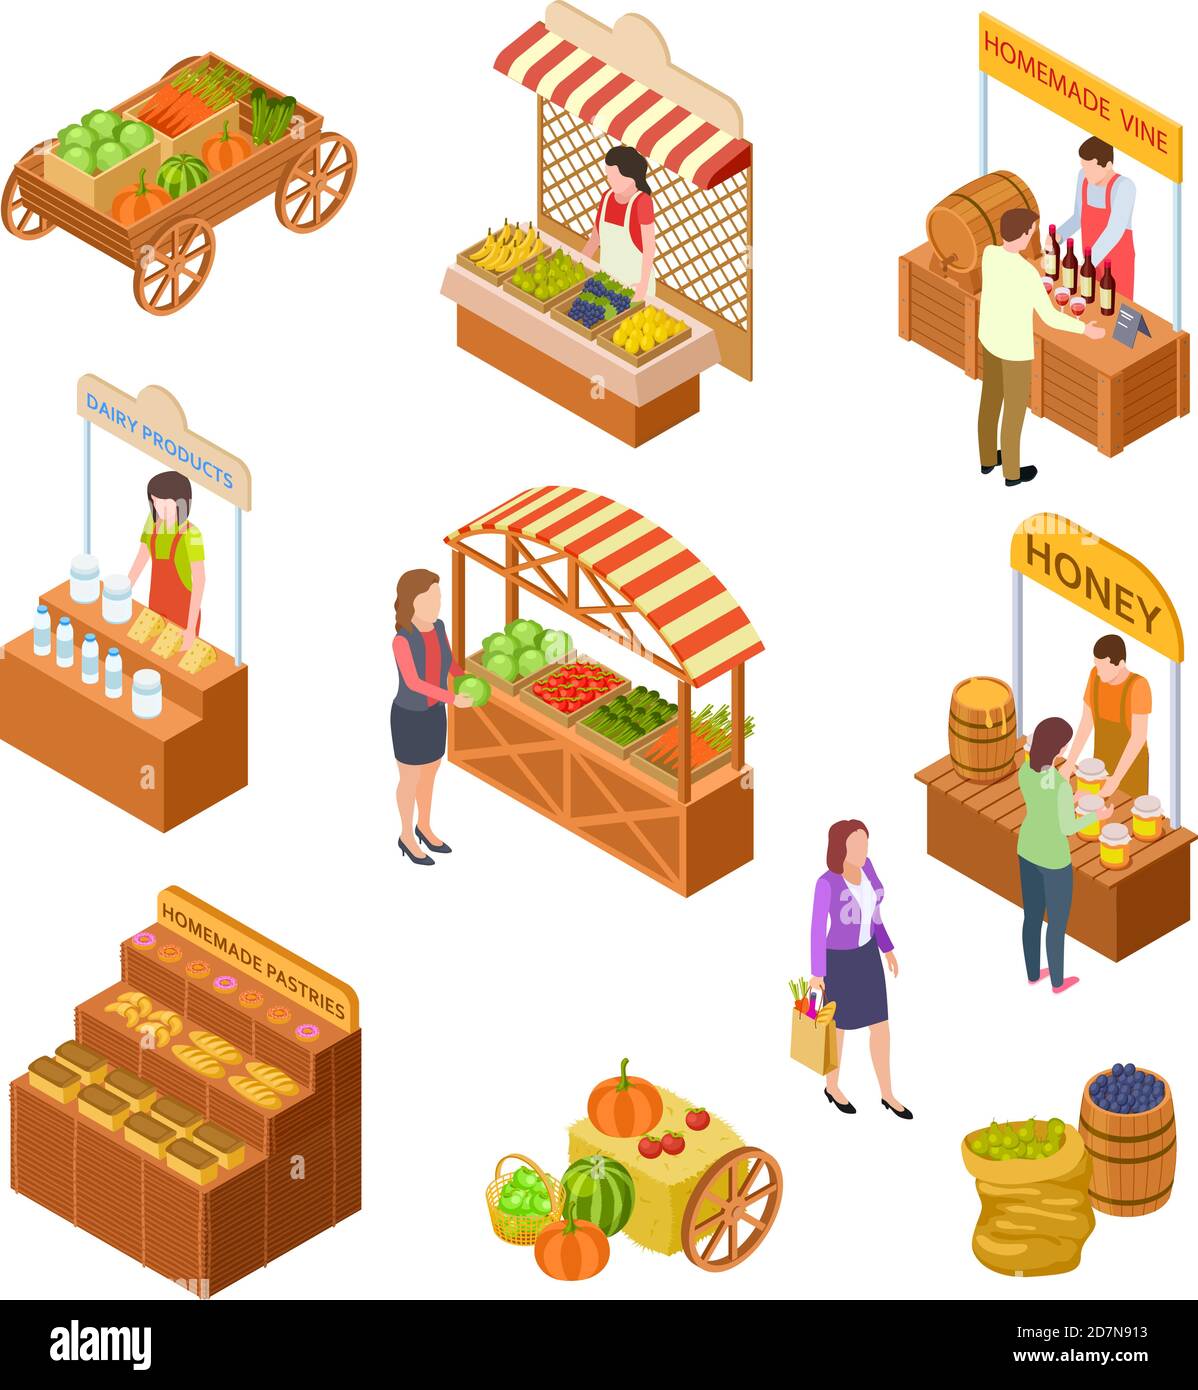 Bauernmarkt isometrisch. Menschen verkaufen und kaufen traditionelle Mahlzeit, Gemüse und Obst auf Lebensmittelmarkt mit Ständen 3d-Vektor-Set. Markt und Geschäft, Markt mit Obst Illustration Stock Vektor